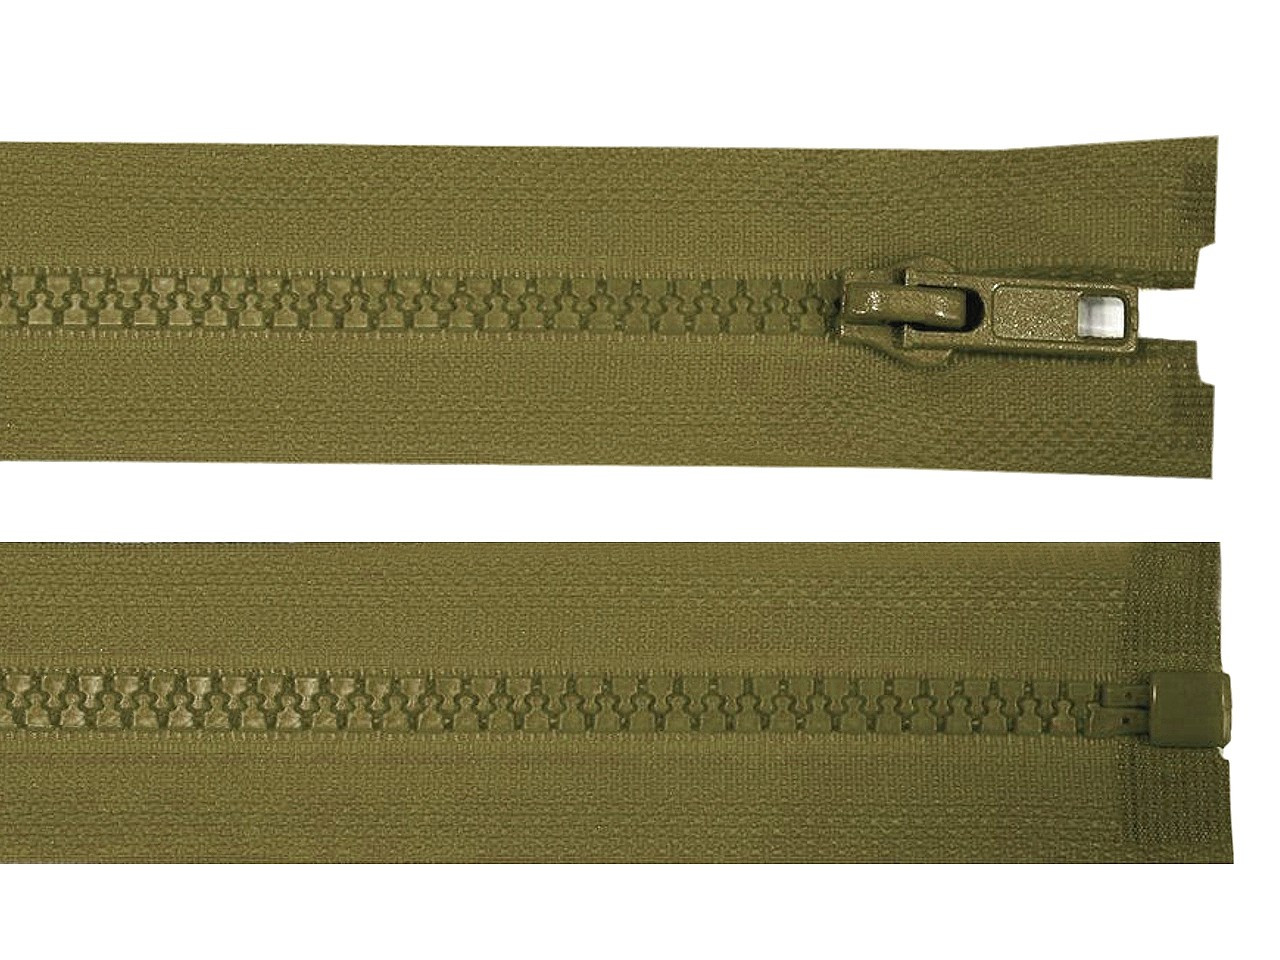 Kostěný zip šíře 5 mm délka 90 cm bundový, barva 298 zelená khaki tmavá